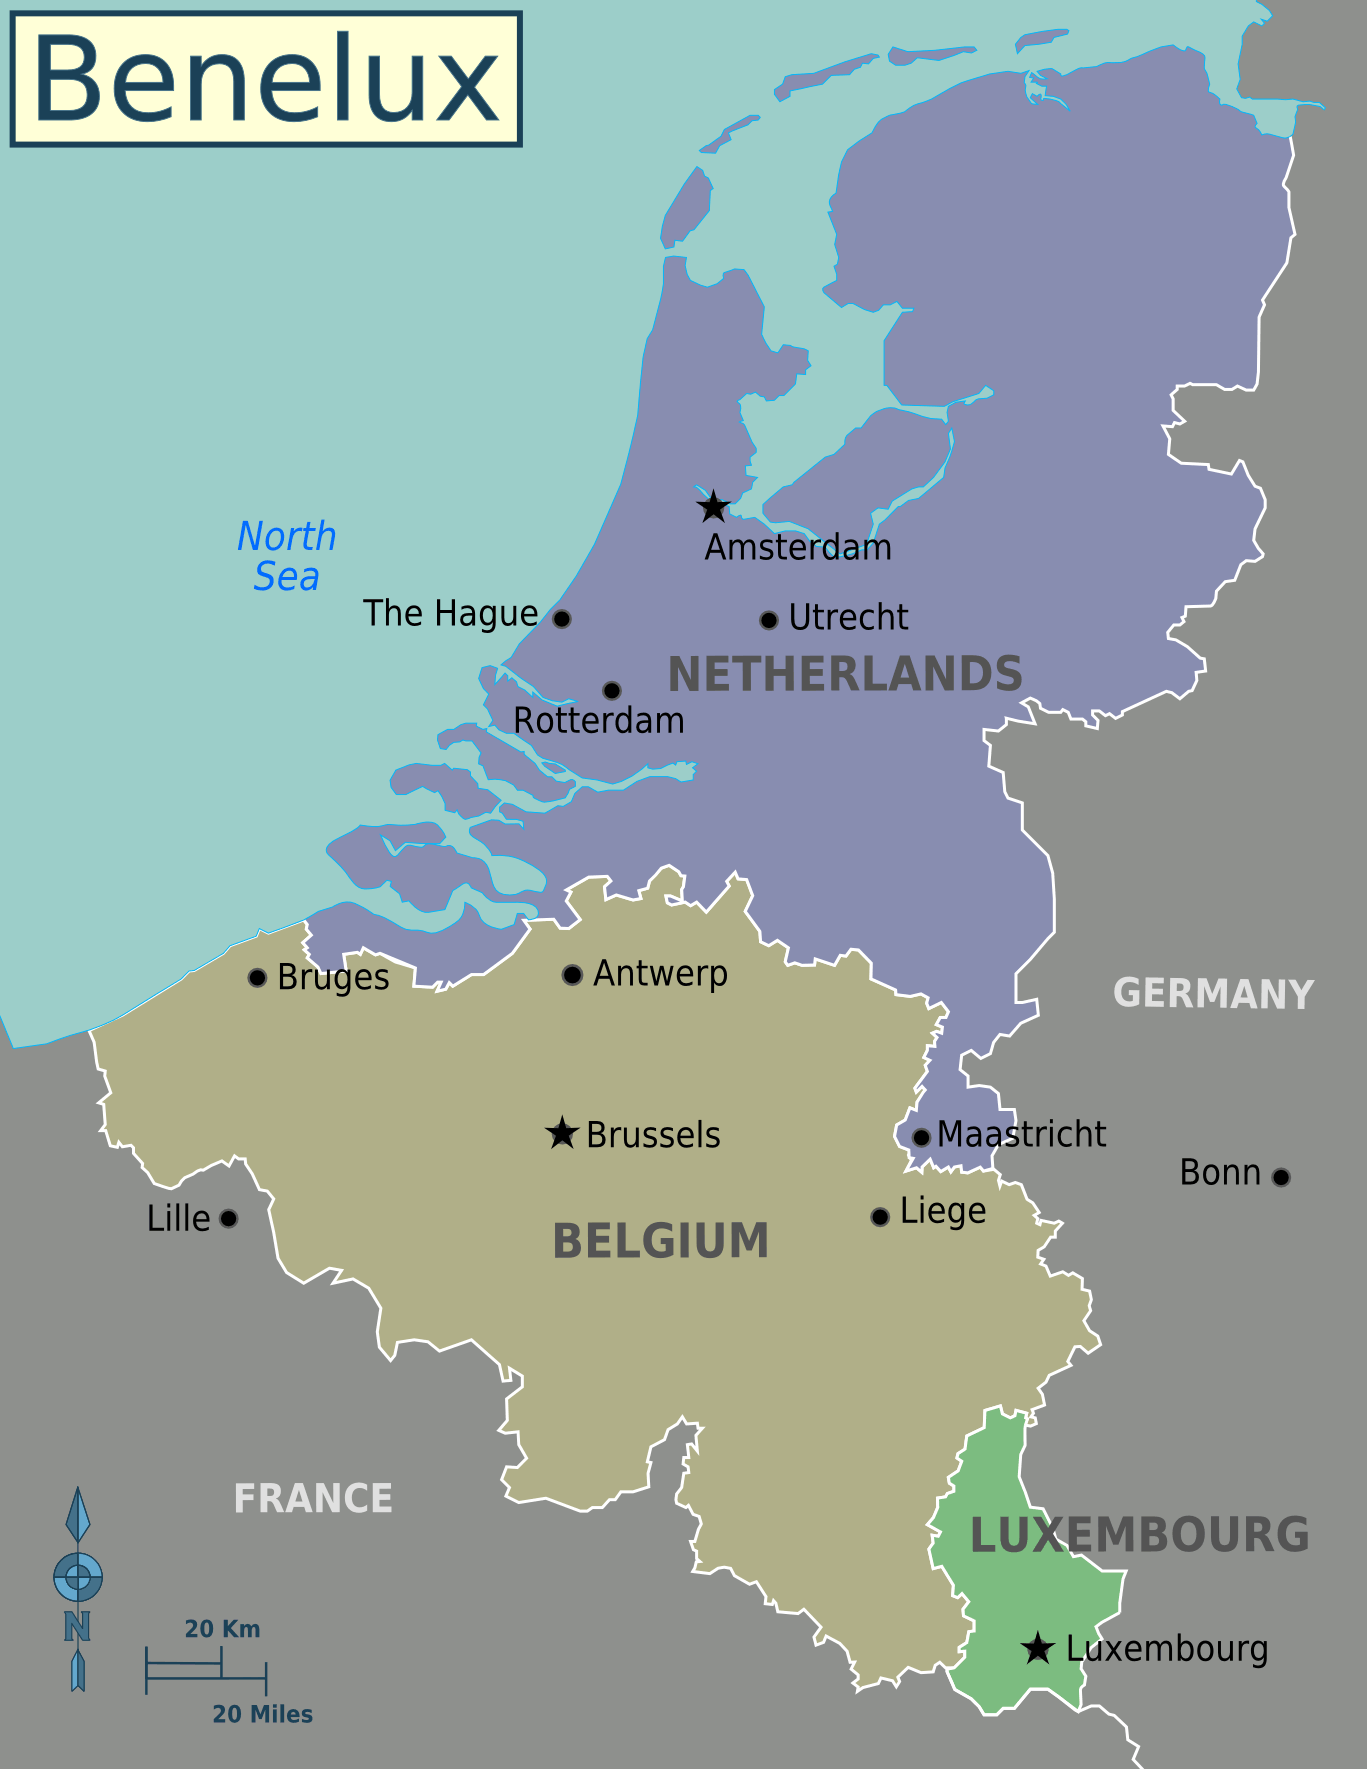 Benelux_ulkeleri_harita.png